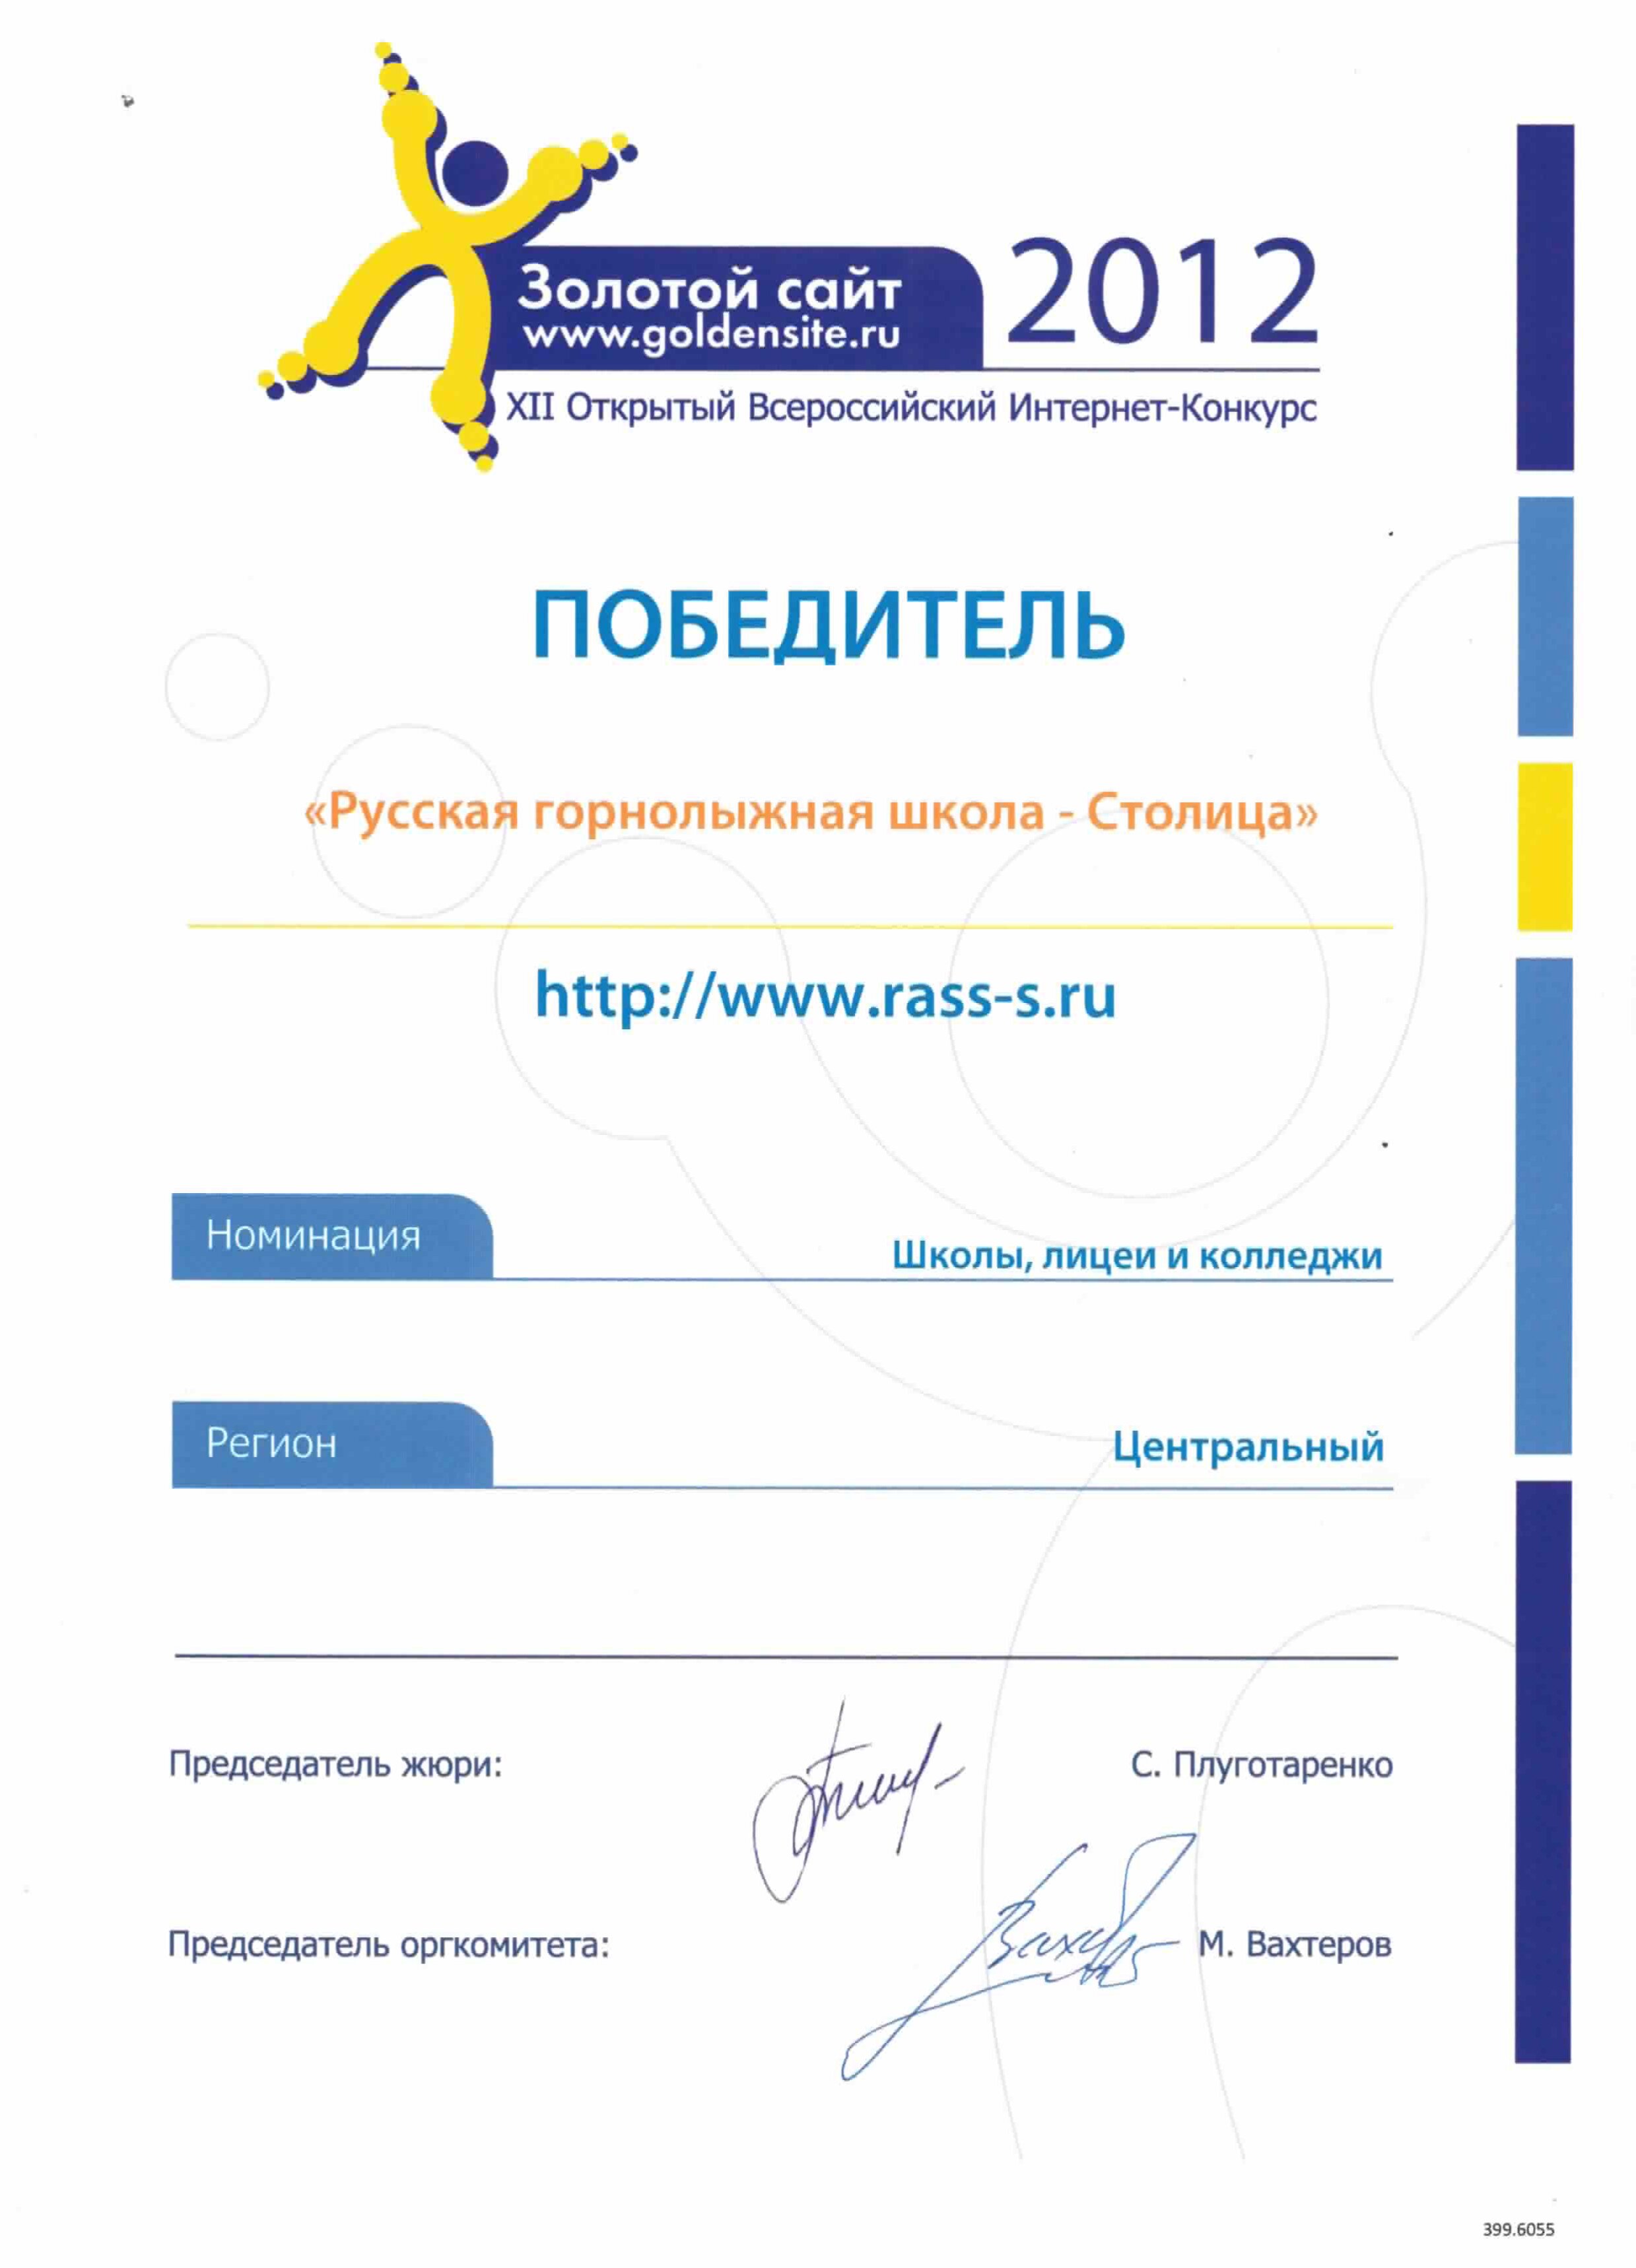 Диплом победителя XII Всероссийского интернет-конкурса «Золотой сайт»